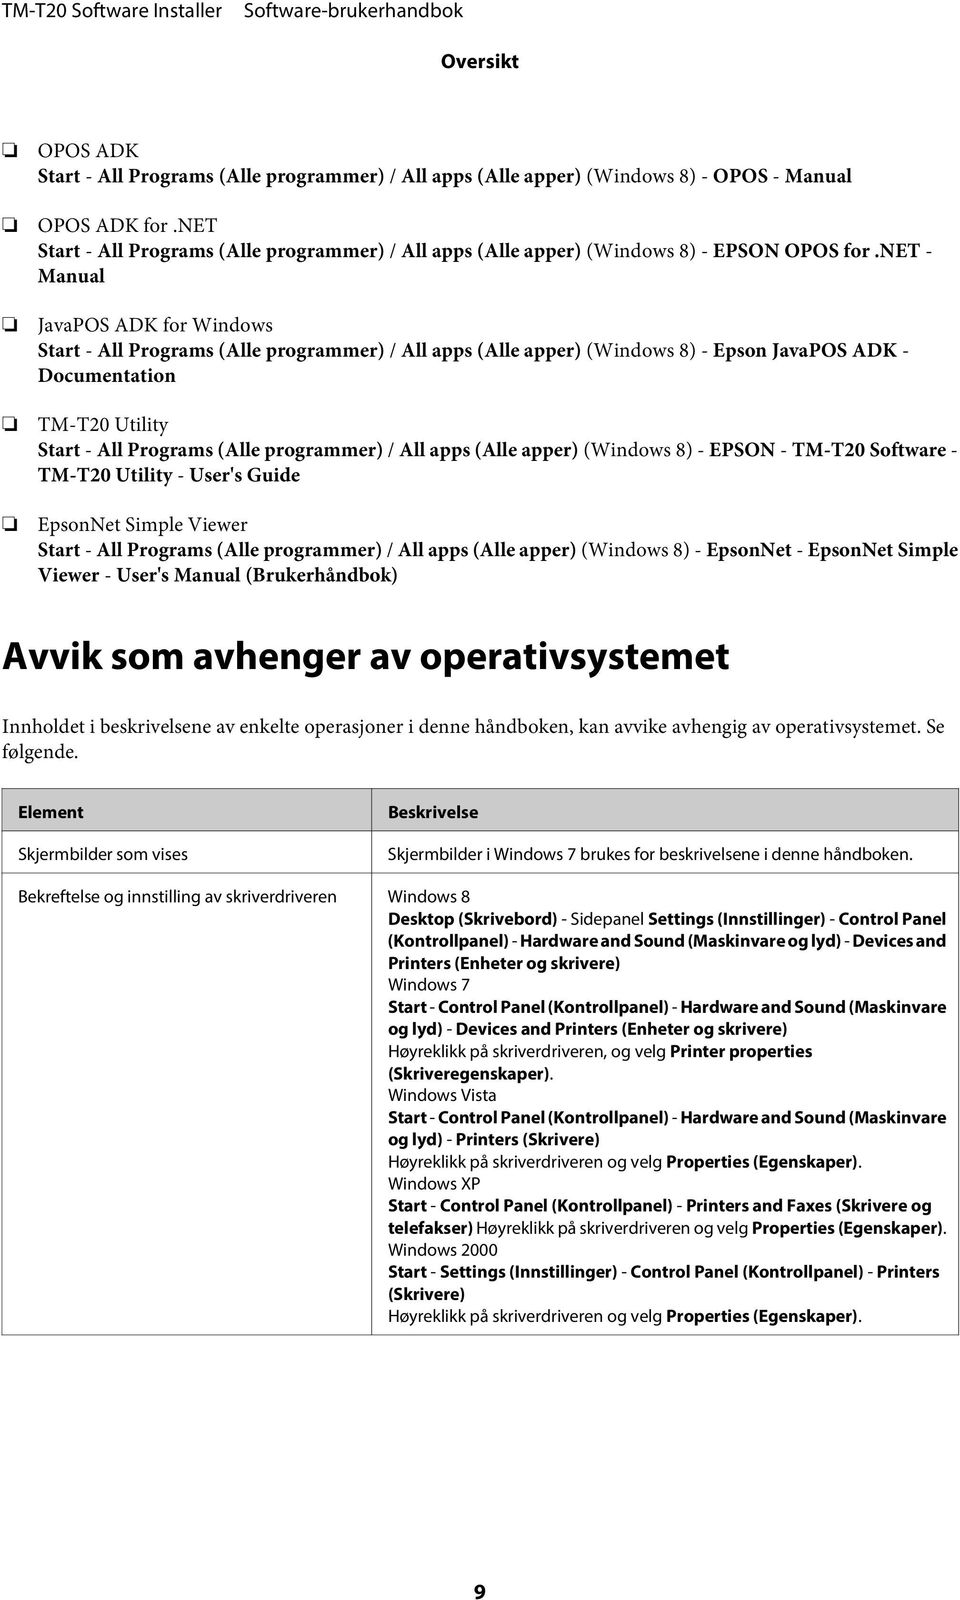 net - Manual JavaPOS ADK for Windows Start - All Programs (Alle programmer) / All apps (Alle apper) (Windows 8) - Epson JavaPOS ADK - Documentation TM-T20 Utility Start - All Programs (Alle